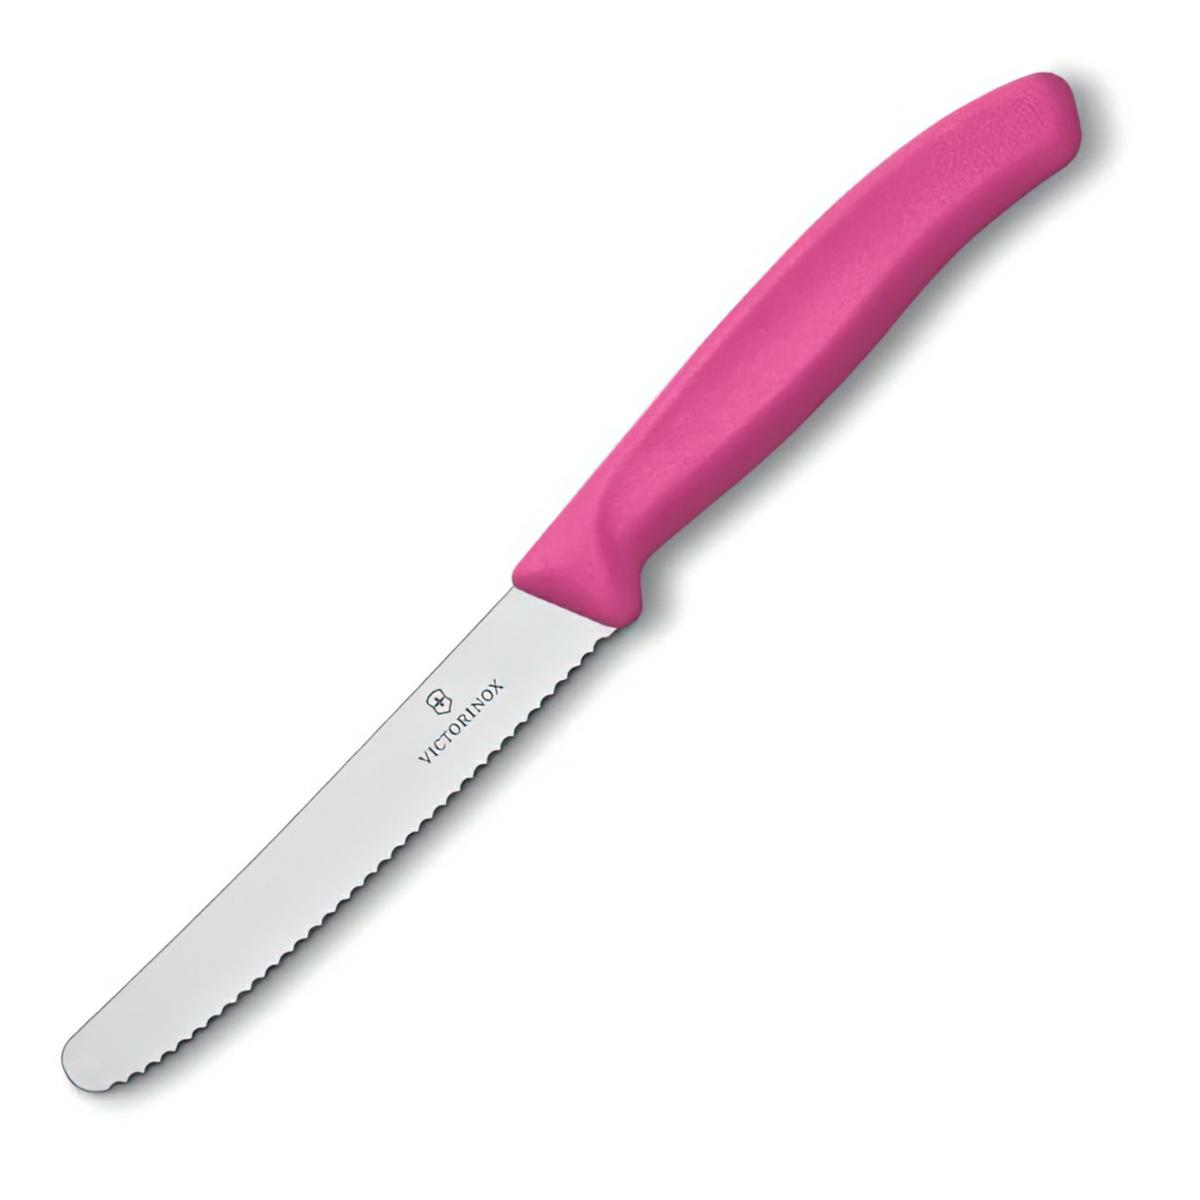 Victorinox nóż uniwersalny 11cm ząbkowany różowy.